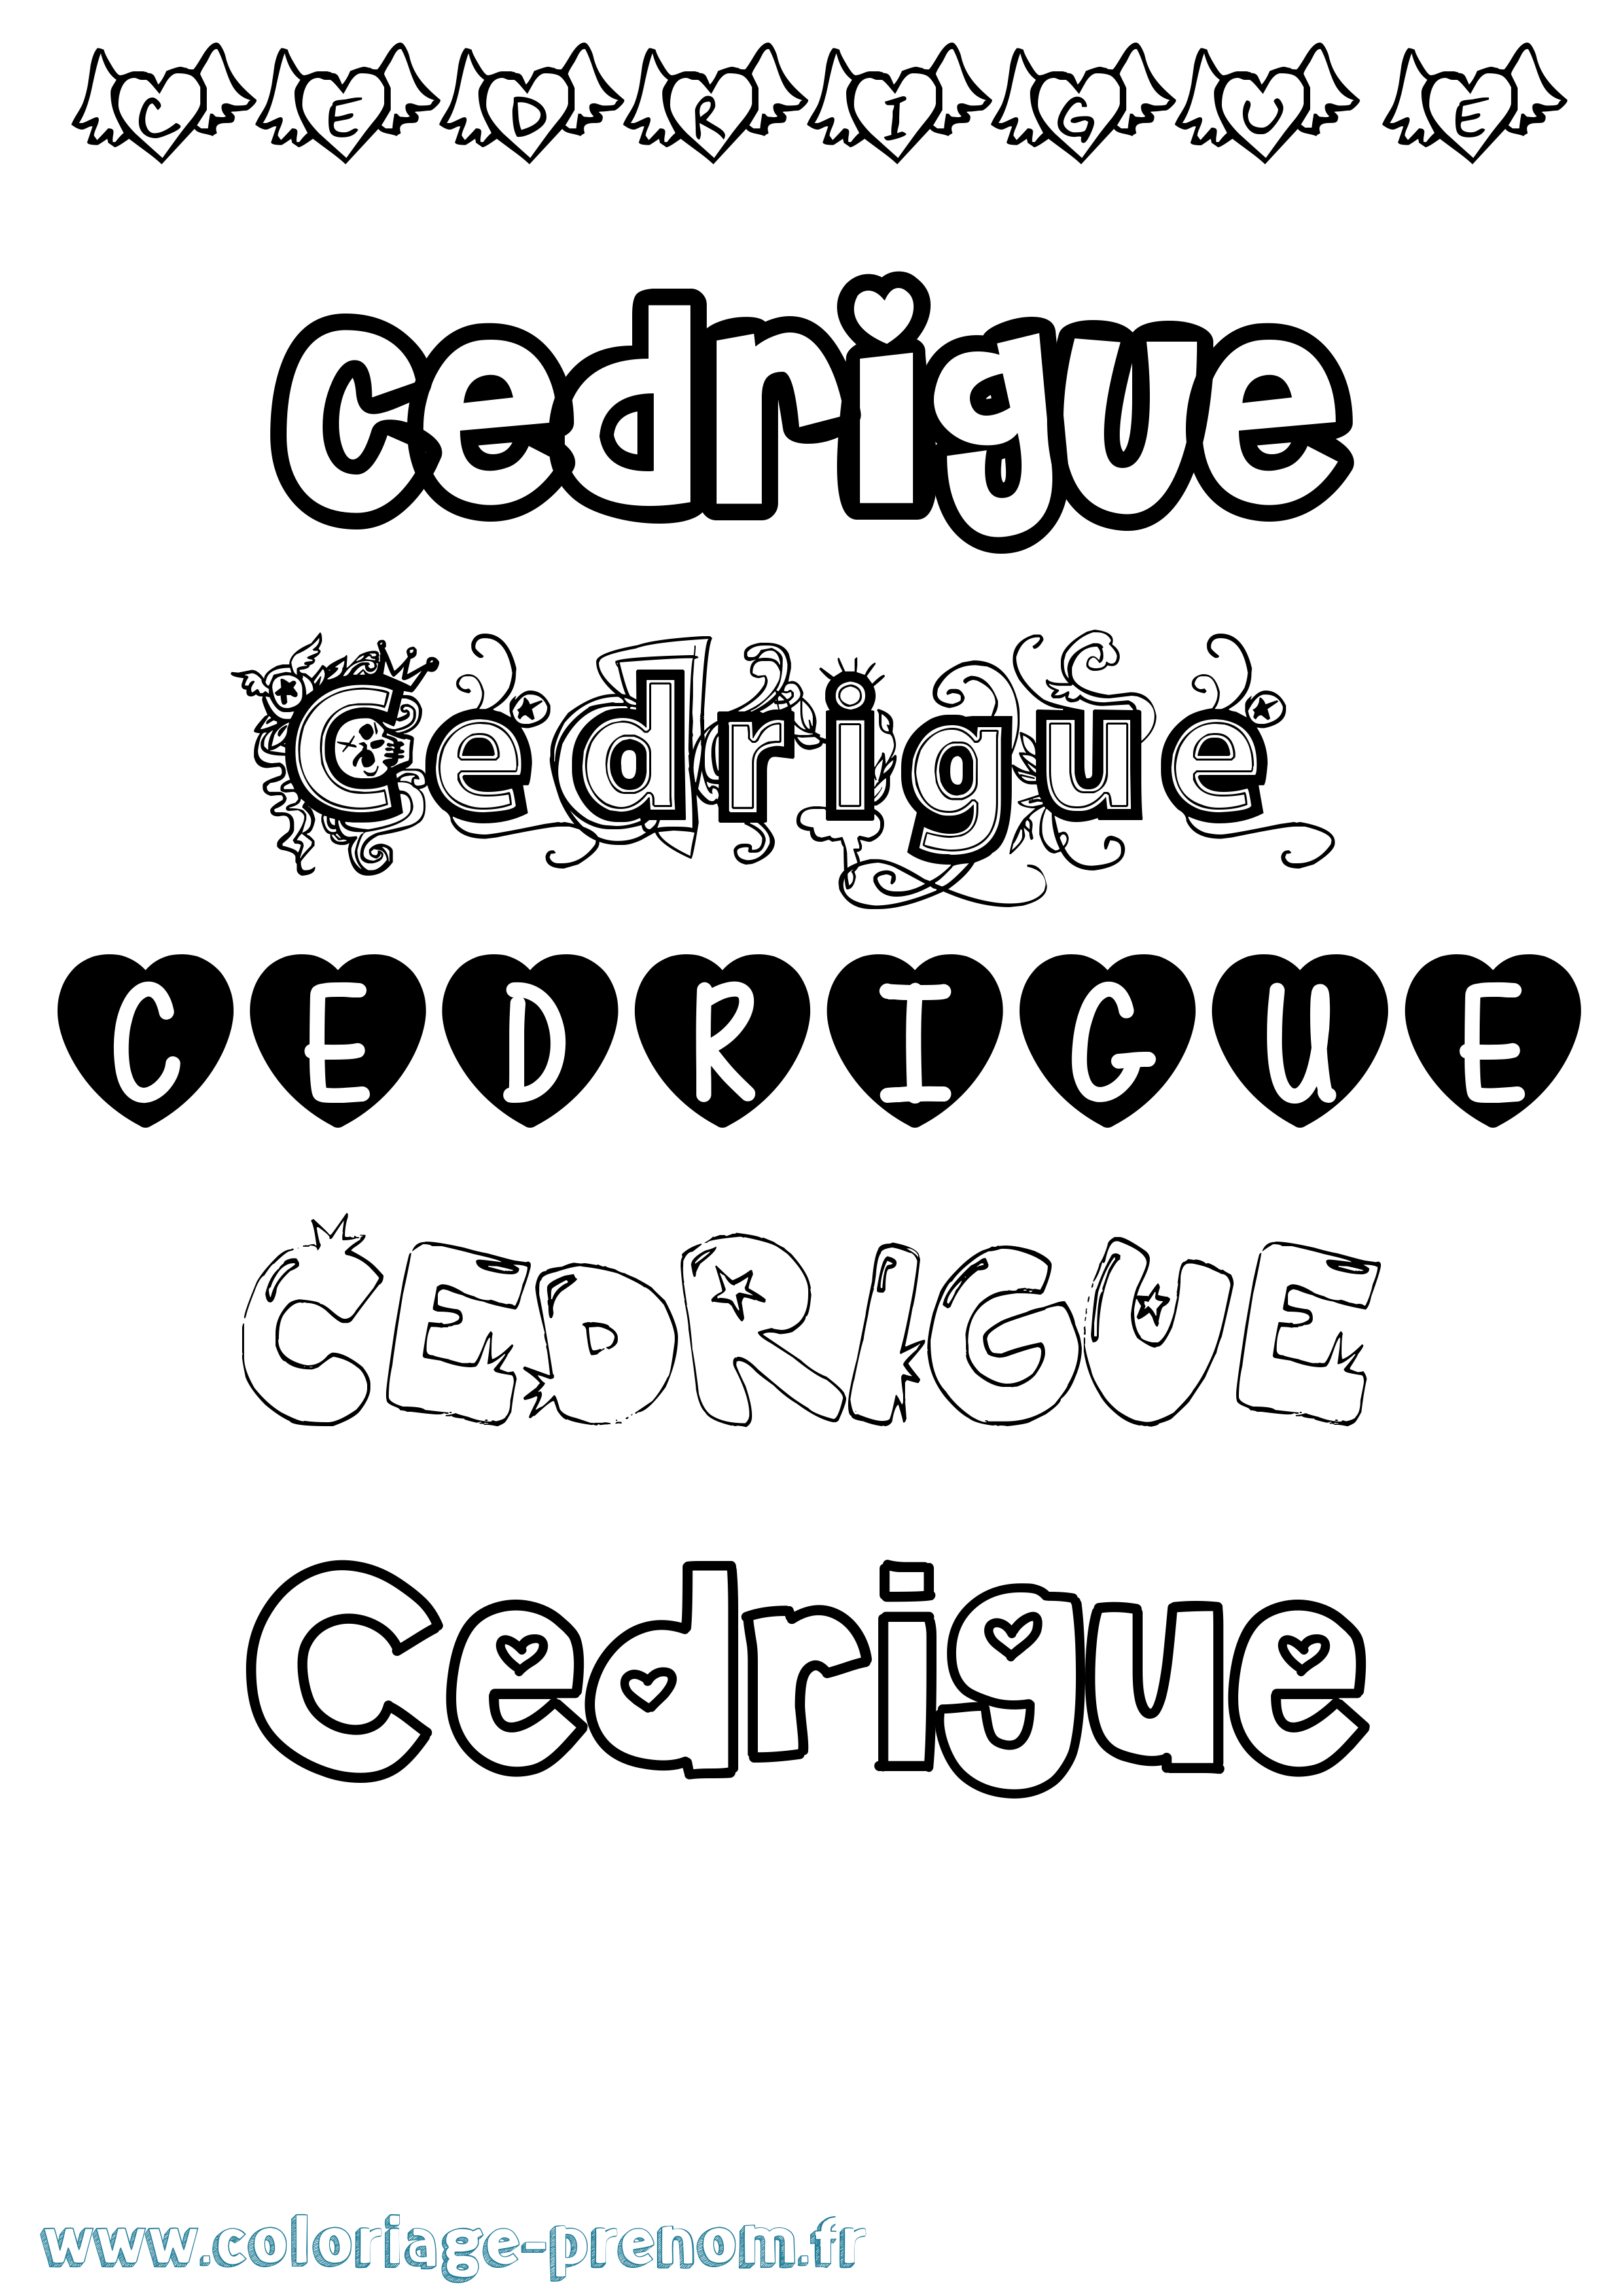 Coloriage prénom Cedrigue Girly